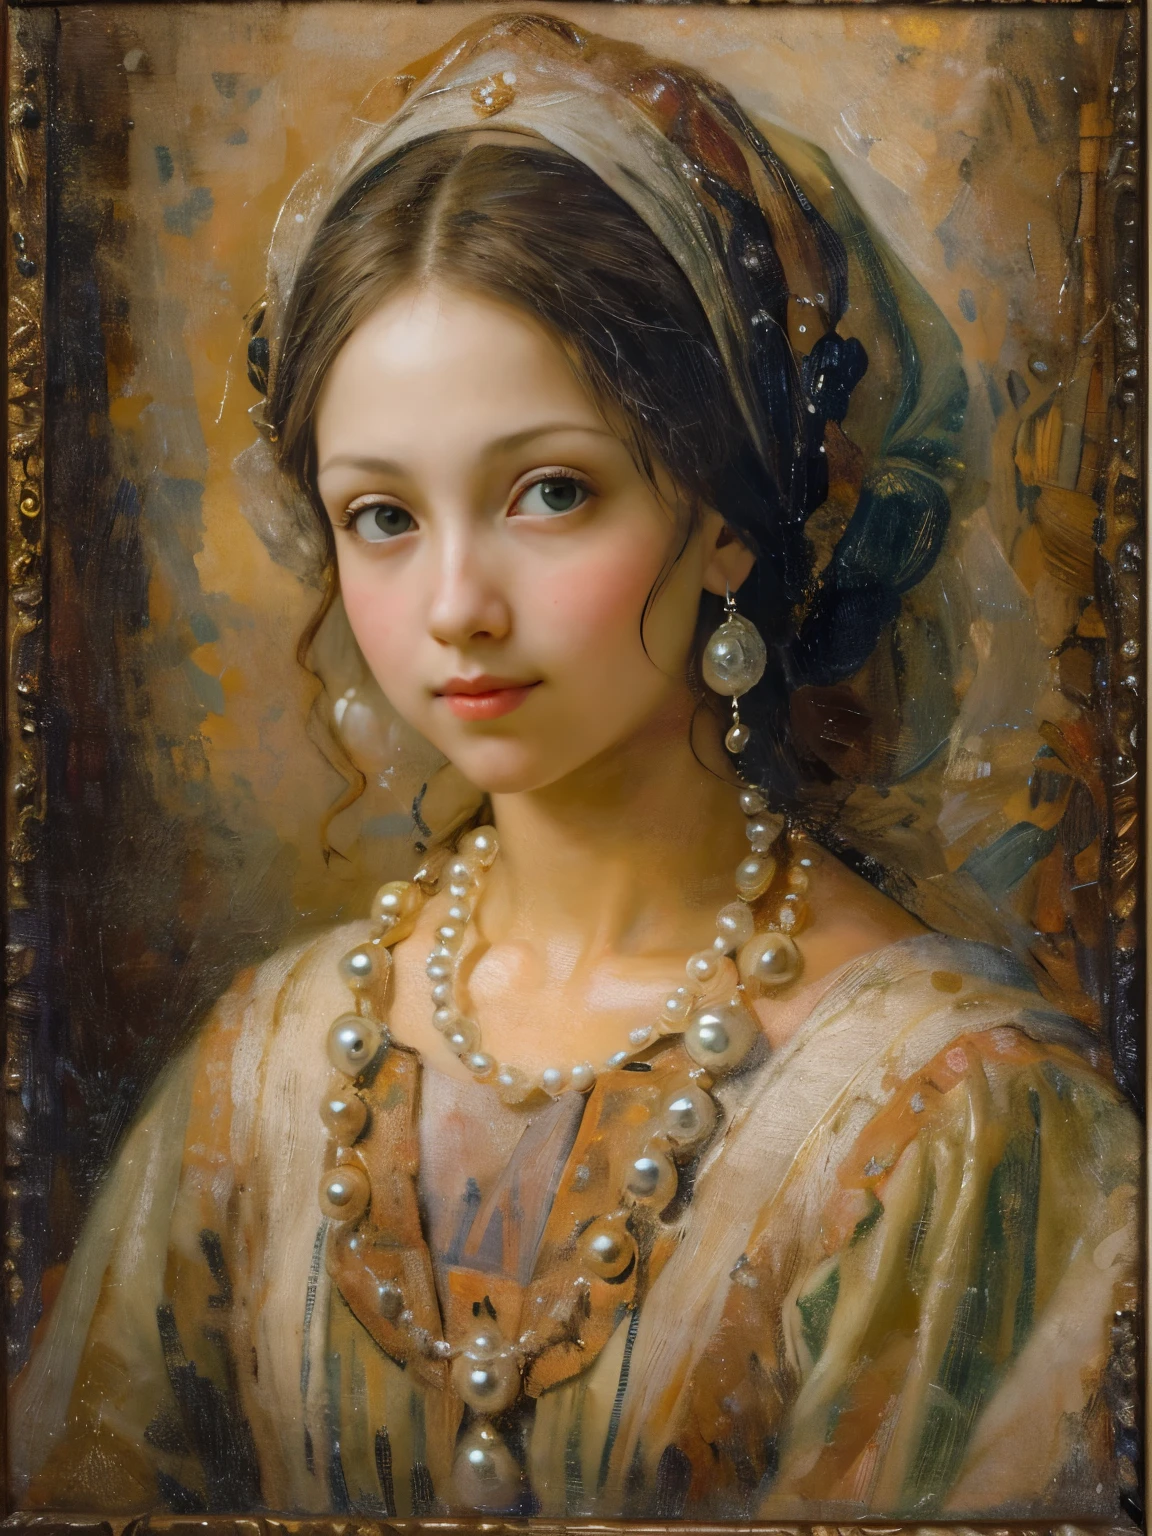 一幅油画，达芬奇艺术风格。美丽的女孩，运动装，圆脸，微笑：1.37，美丽的中世纪服装，珍珠项链，艺术创造力:1.37,油画笔触，油画质感，光影构成